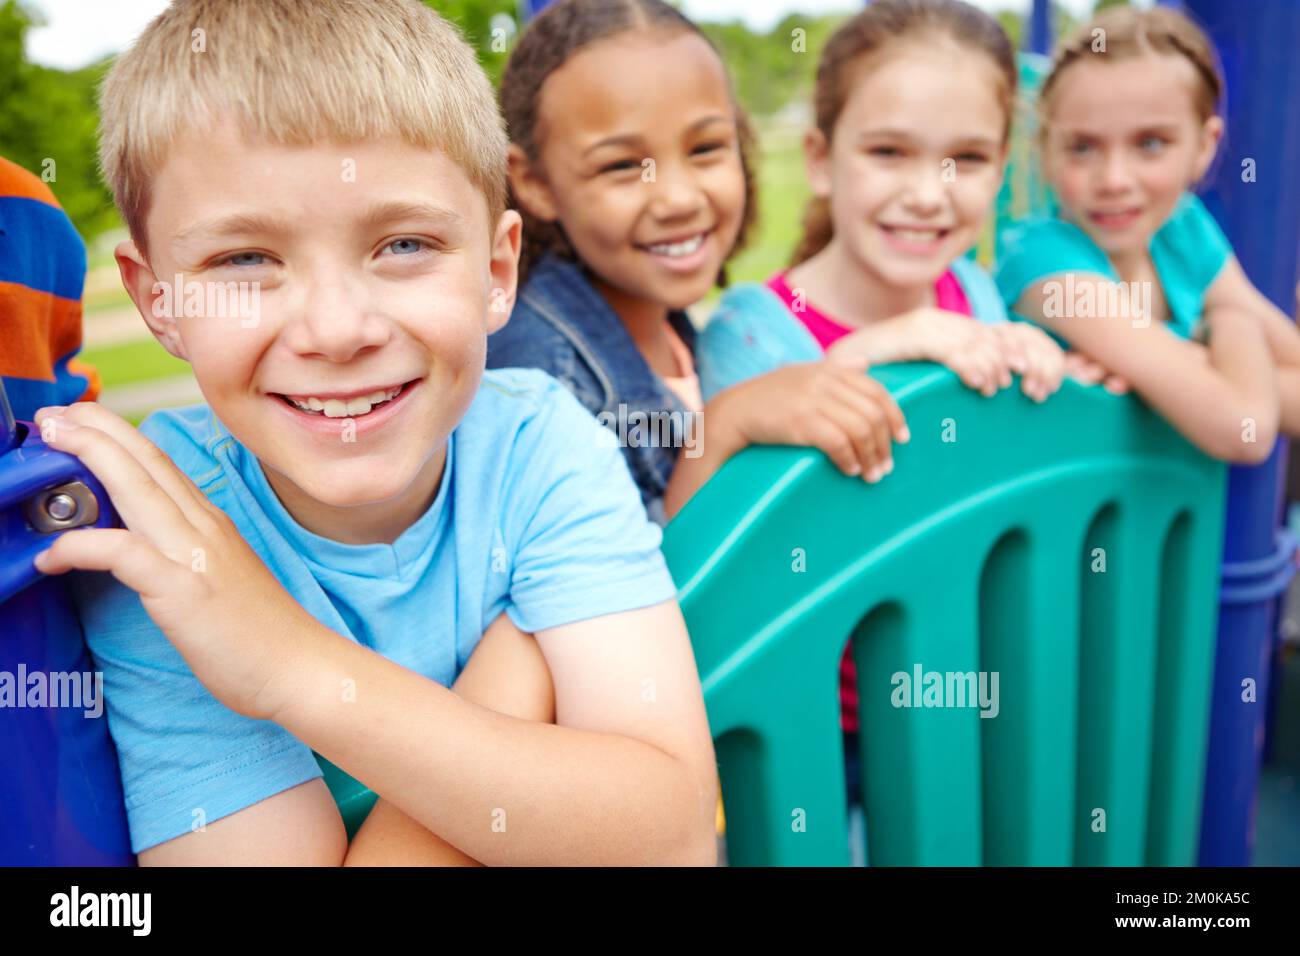 Godendo del tempo trascorso con i suoi amici. Un gruppo multietnico di bambini felici che giocano in una palestra nella giungla in un parco giochi. Foto Stock